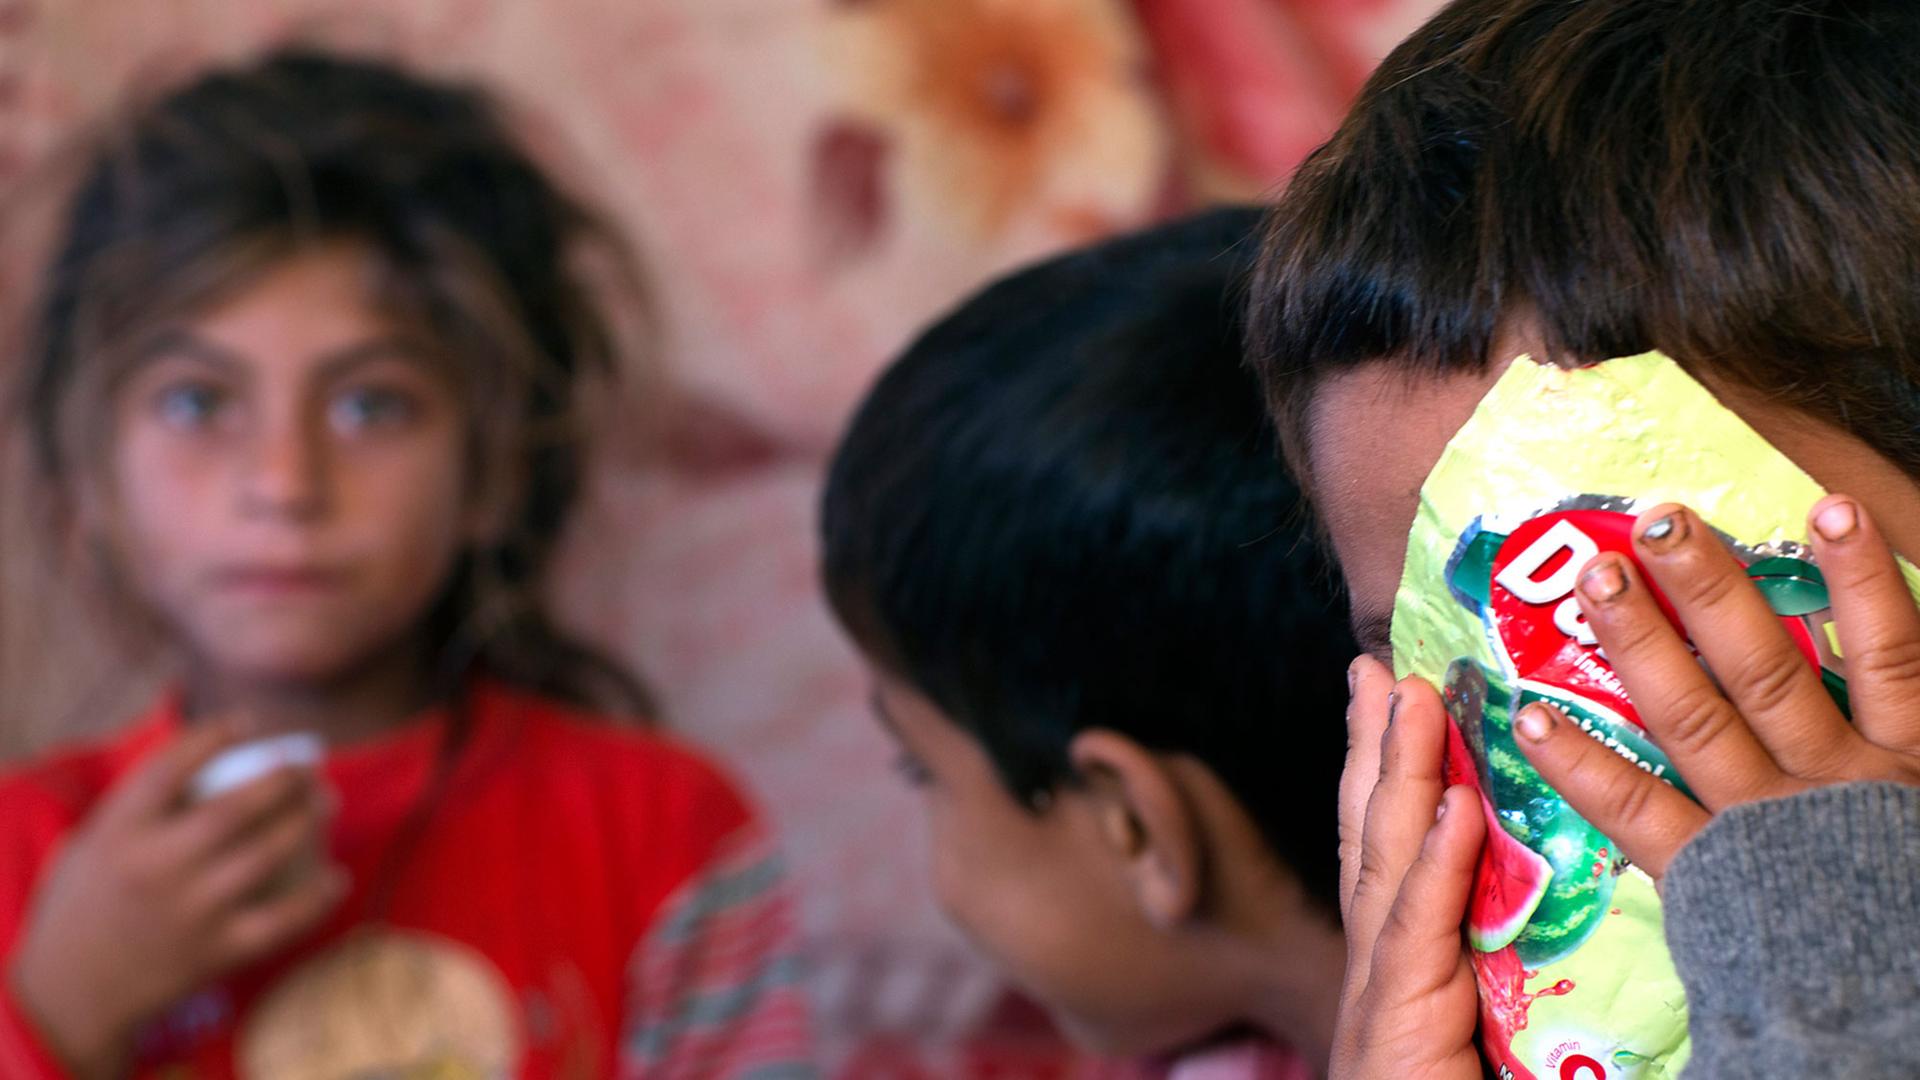 Drei Kinder einer syrischen Flüchtlingsfamilie, eines verdeckt sein Gesicht mit einer Tüte Bonbons.